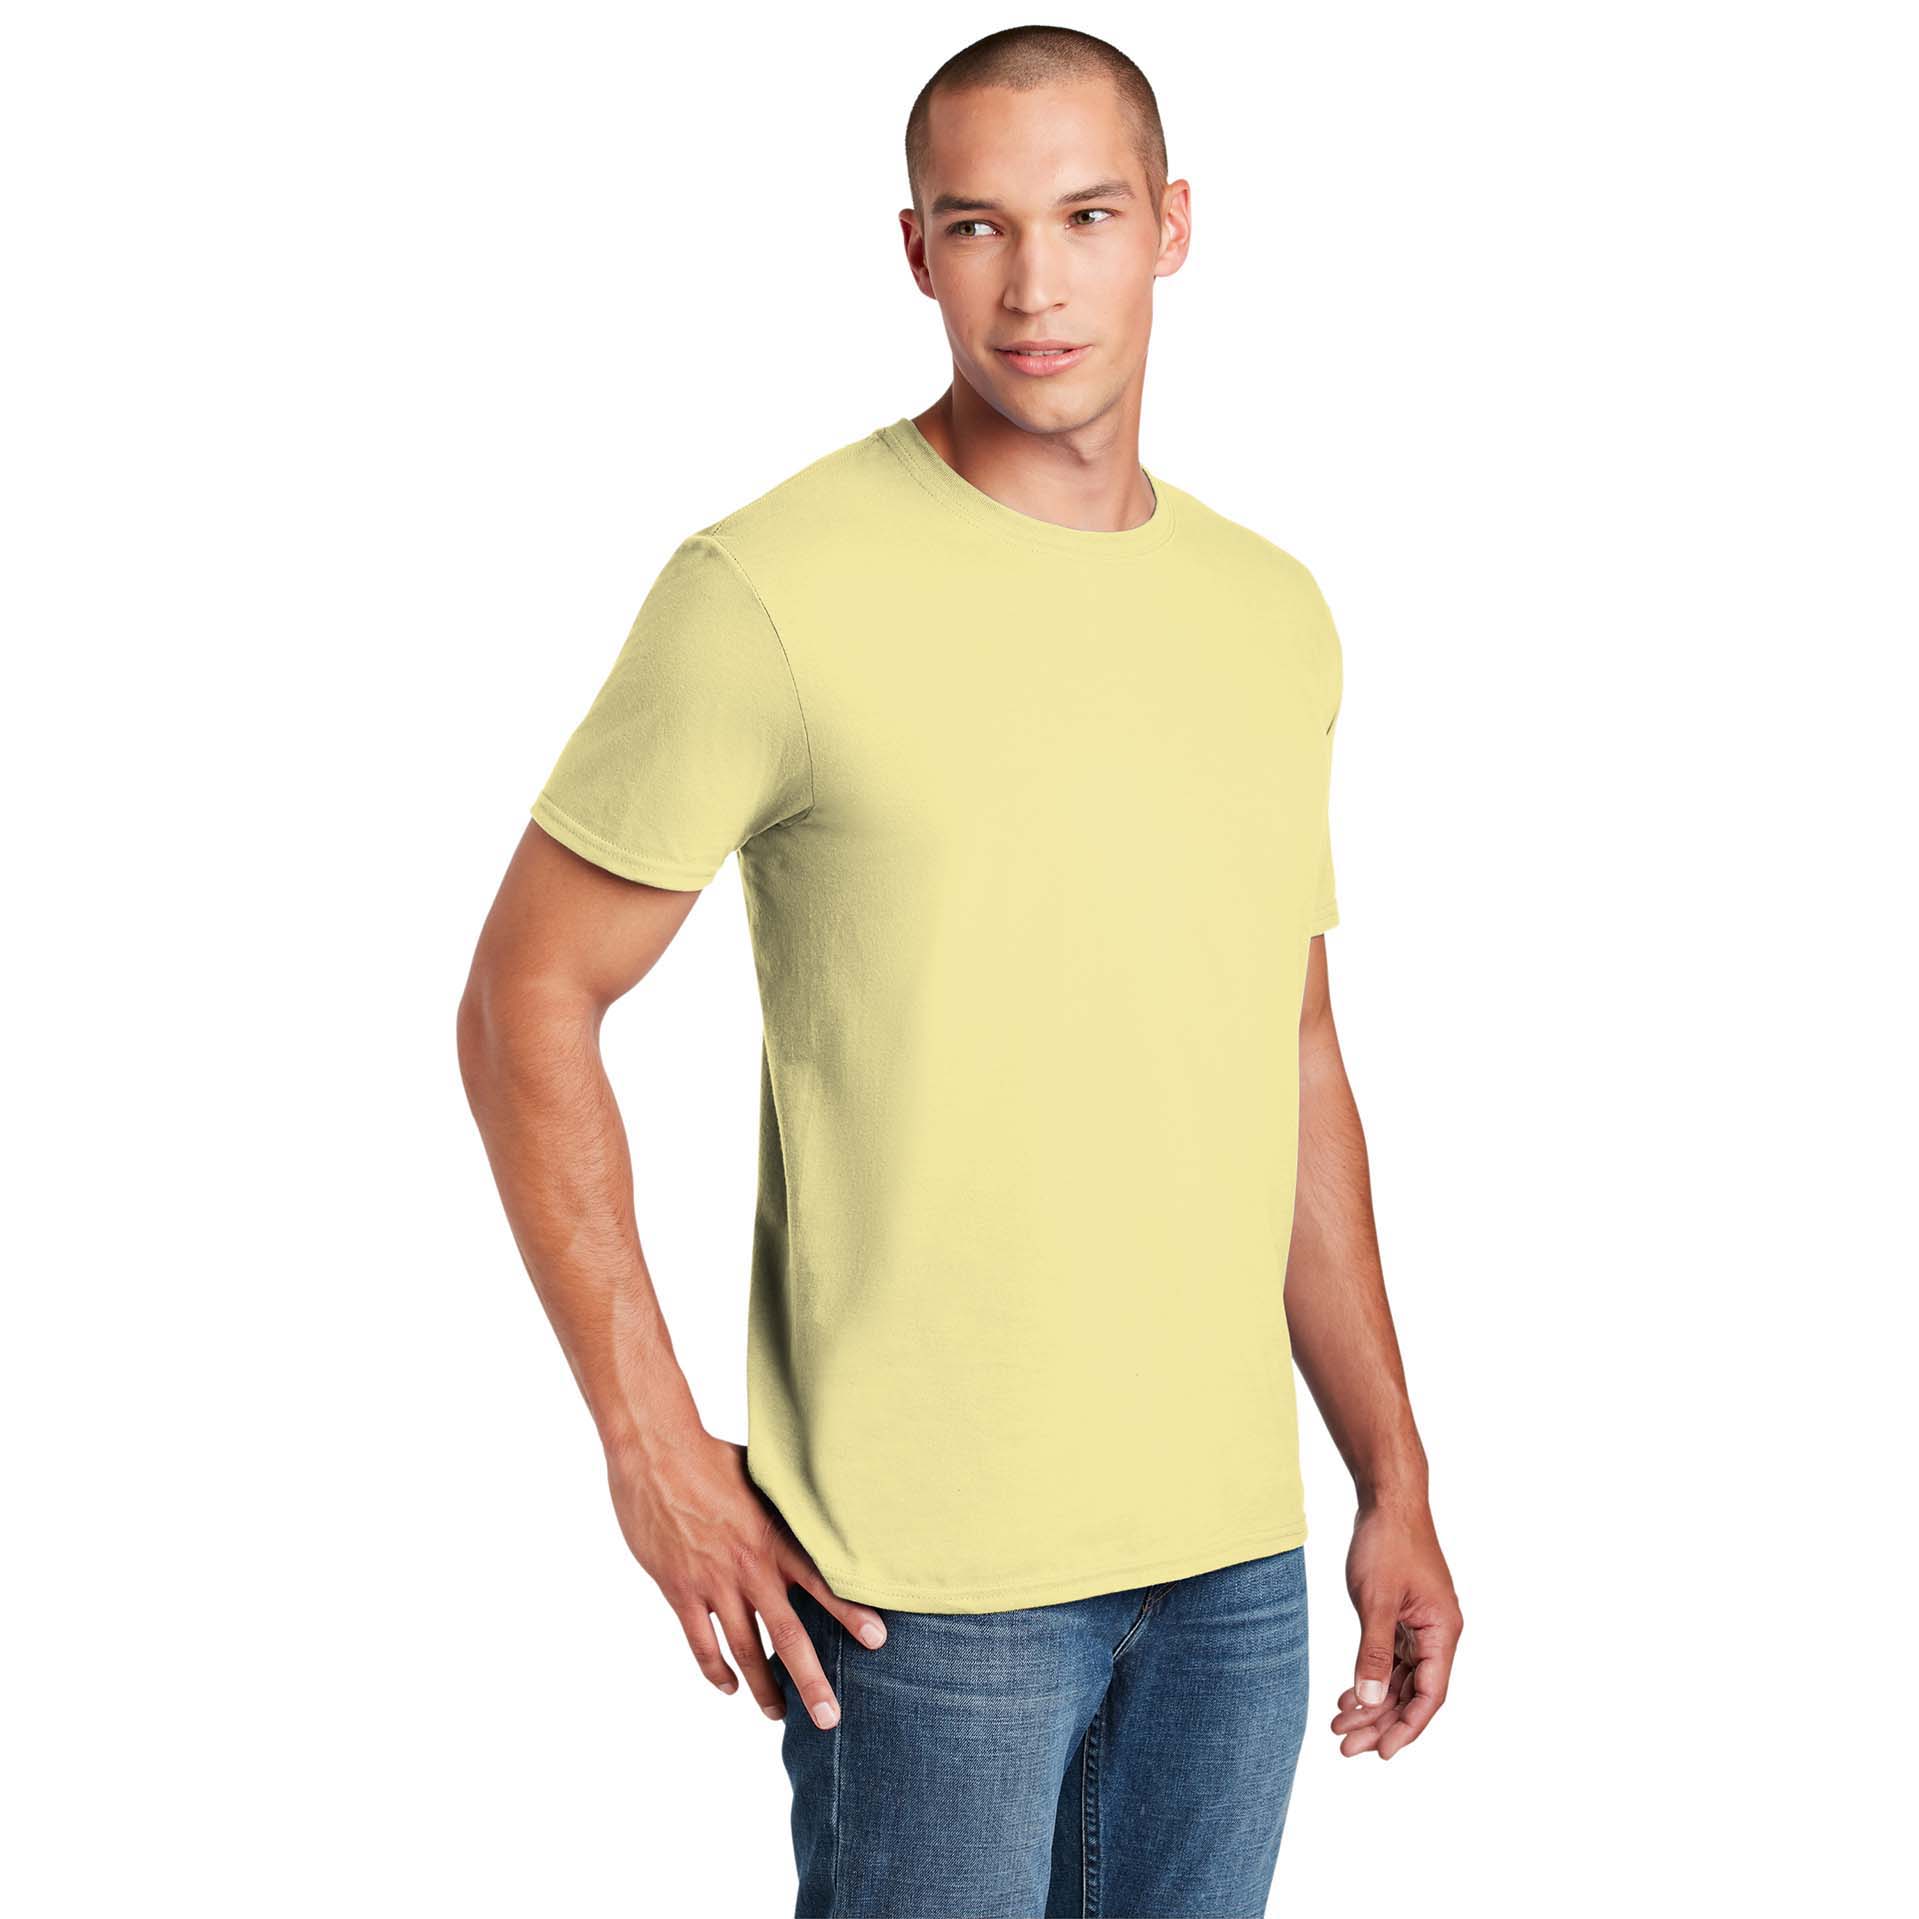 Corn Silk 64000 Gildan Softstyle T-Shirt 